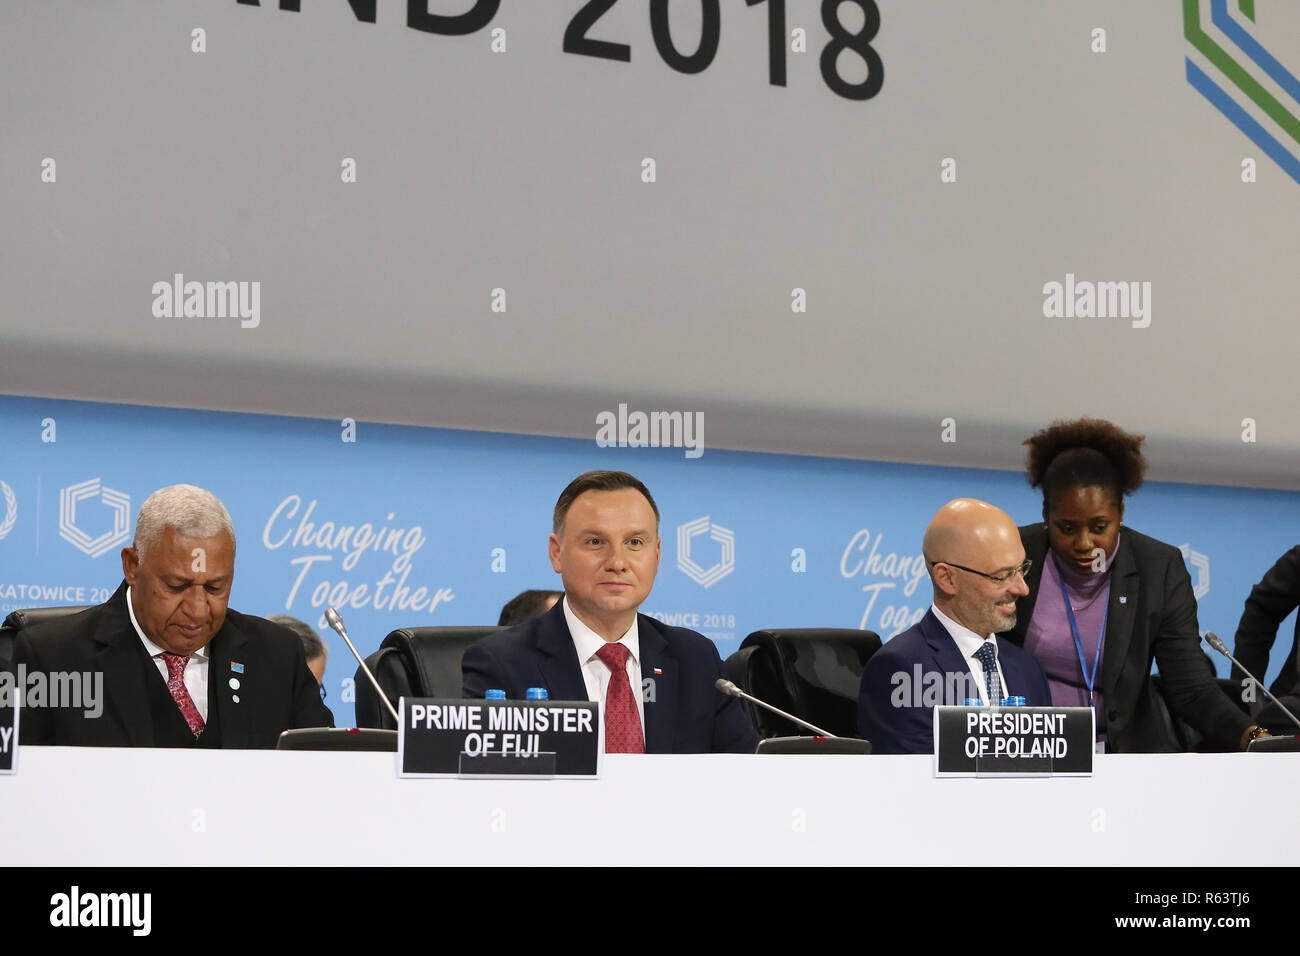 L-R Frank Bainimarama, Premierminister der Fidschi-Inseln, Andrzej Duda, Präsident von Polen, und Michal Kurtyka, Präsident der COP 24 Konferenz, während gesehen Stockfoto